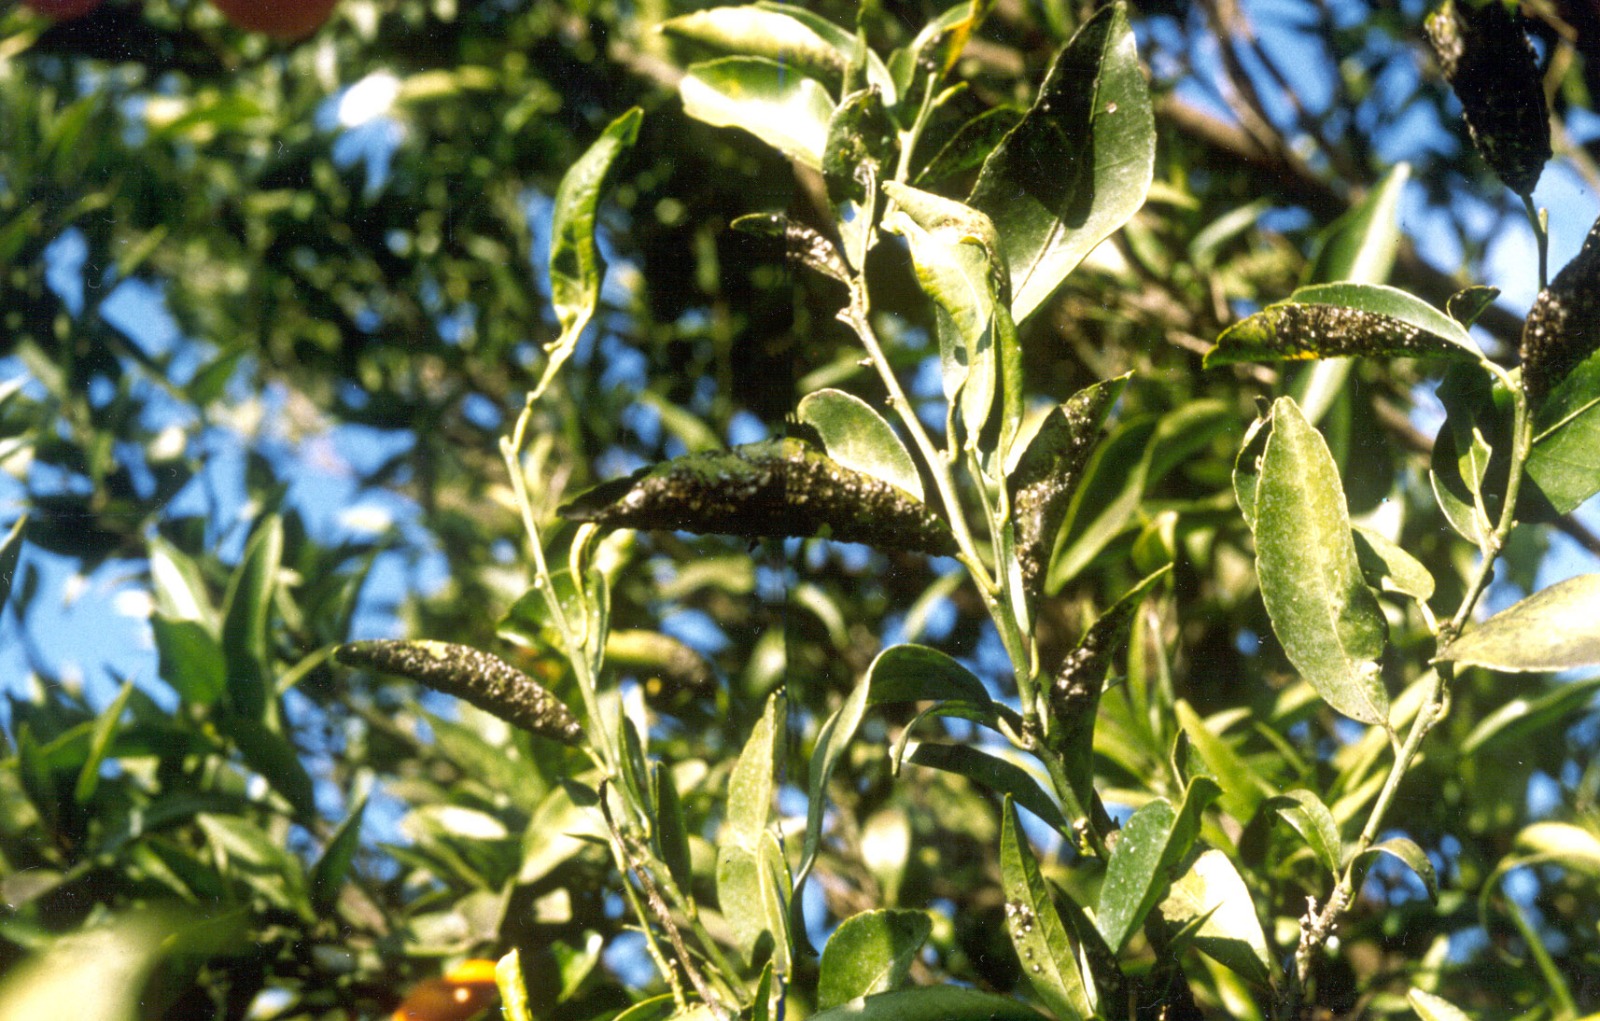 residui invernali di mosca e fumaggine su agrumi